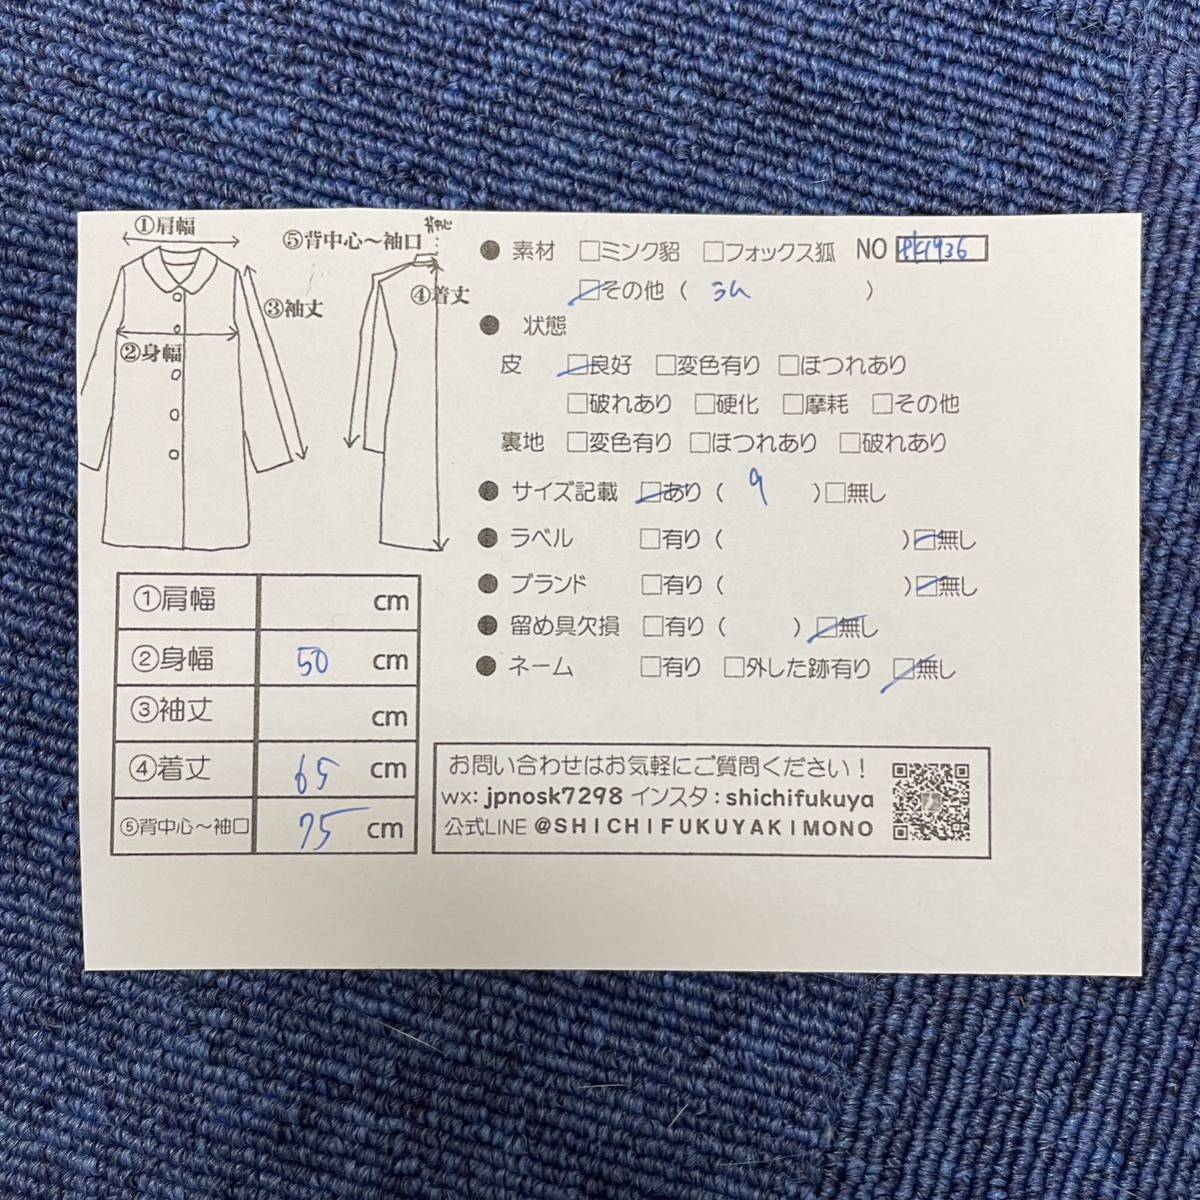 【七福】fk1936 ハーフコート デザインコート ベビーラムコート カラーベビーラム 羊皮 lamb 身丈 約 65cm_画像9